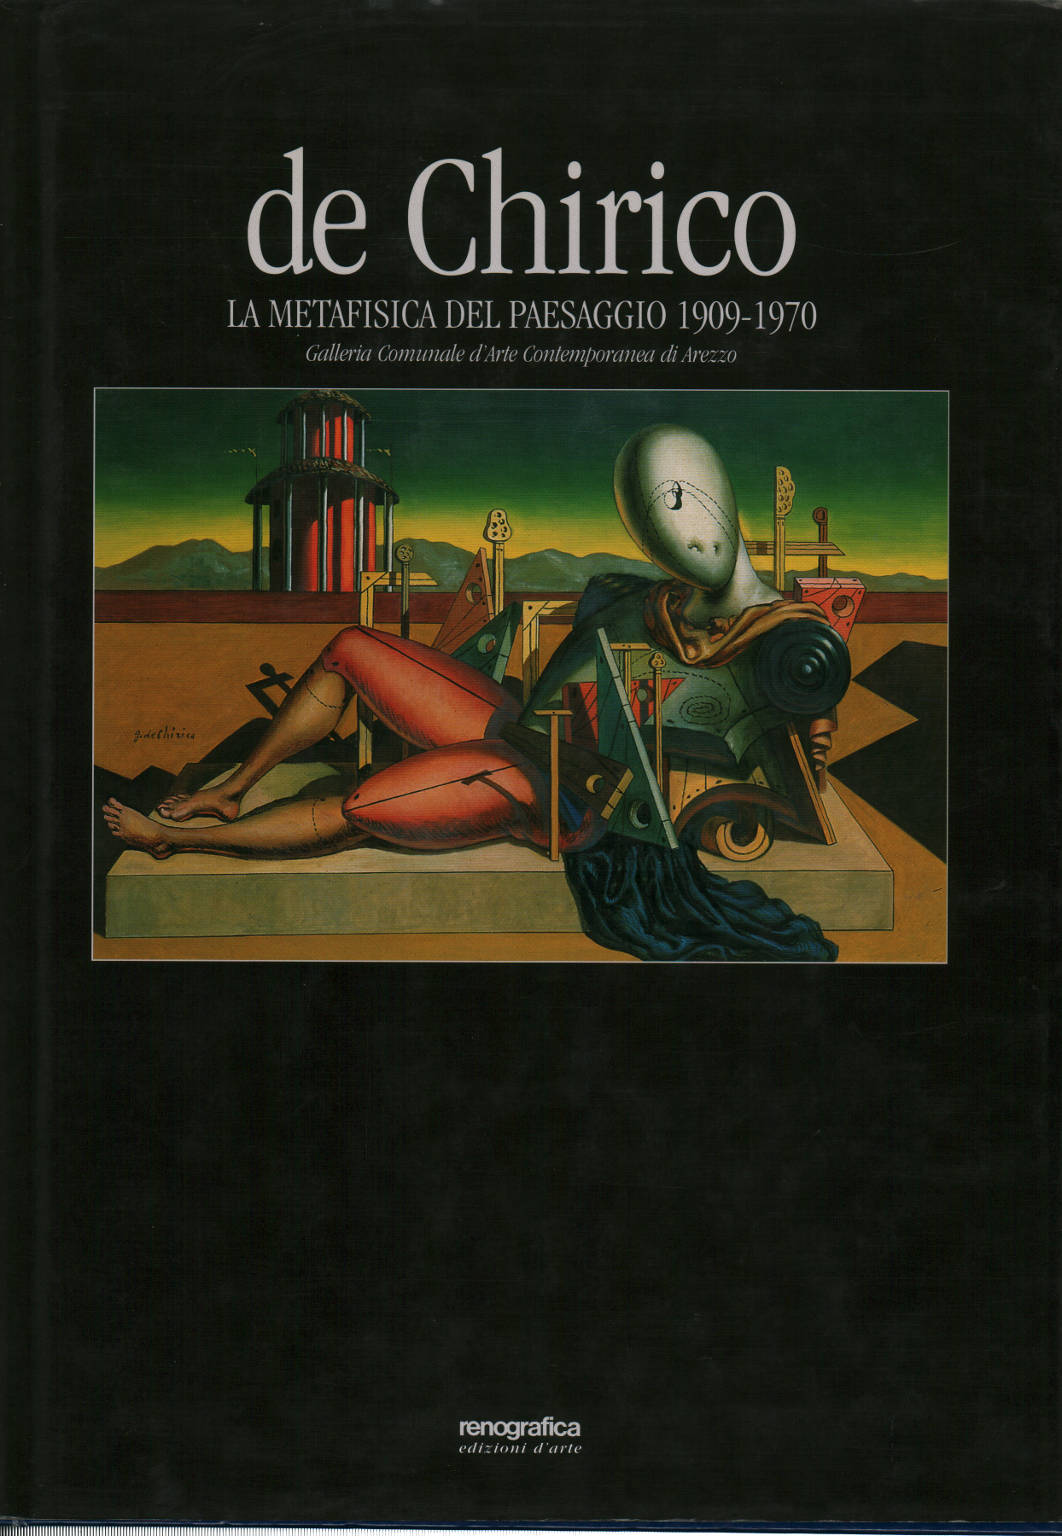 De Chirico: la metafísica del paisaje 1909-1970, Maurizio Fagiolo Dell'arco